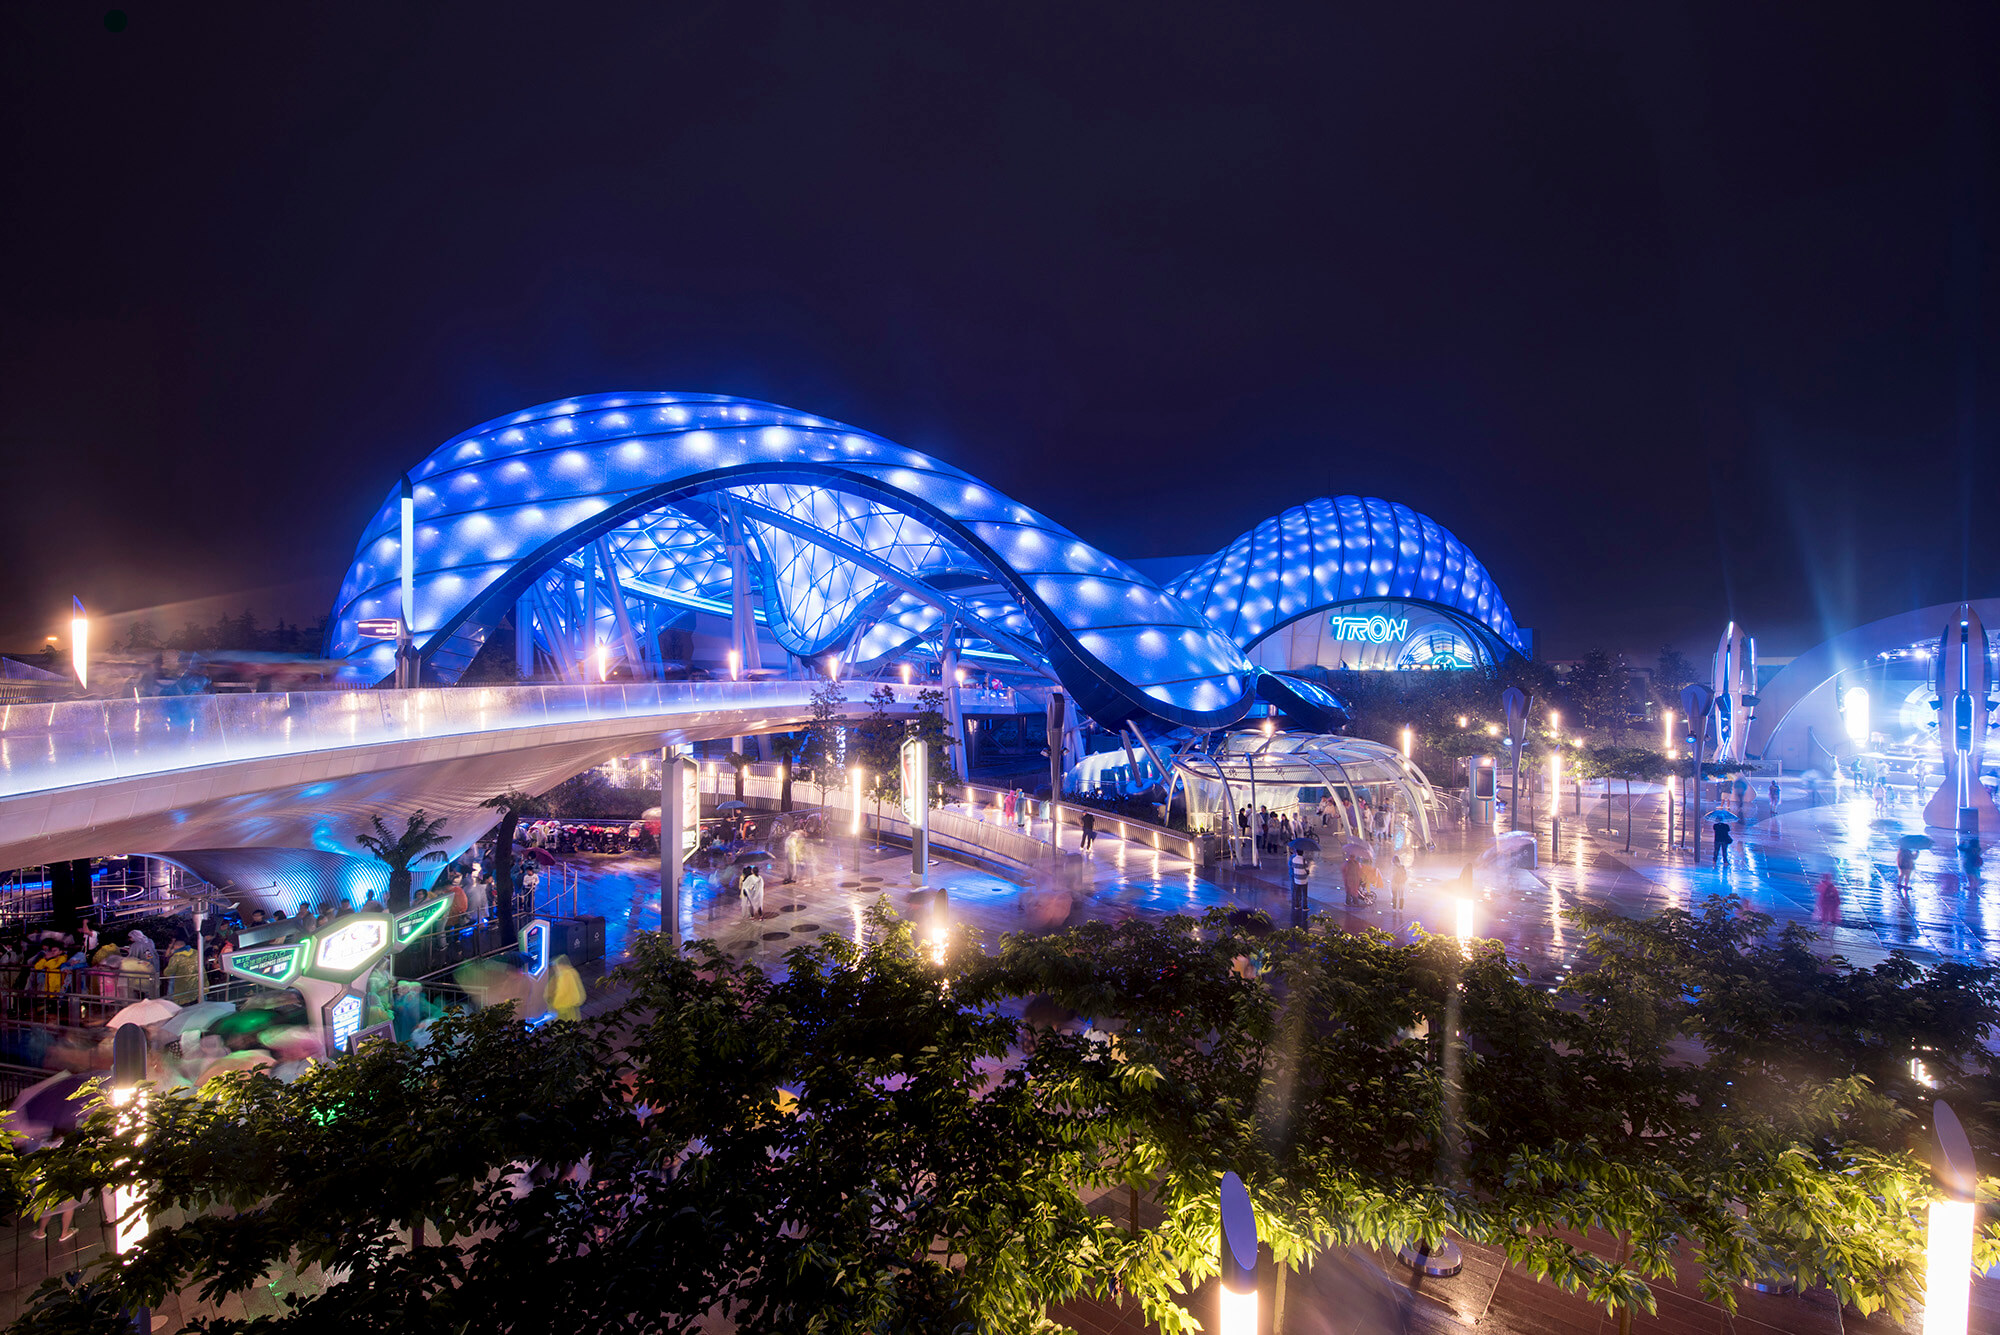 Image: Shanghai Disney Resort Tomorrowland. (Courtesy Grimshaw Architects)